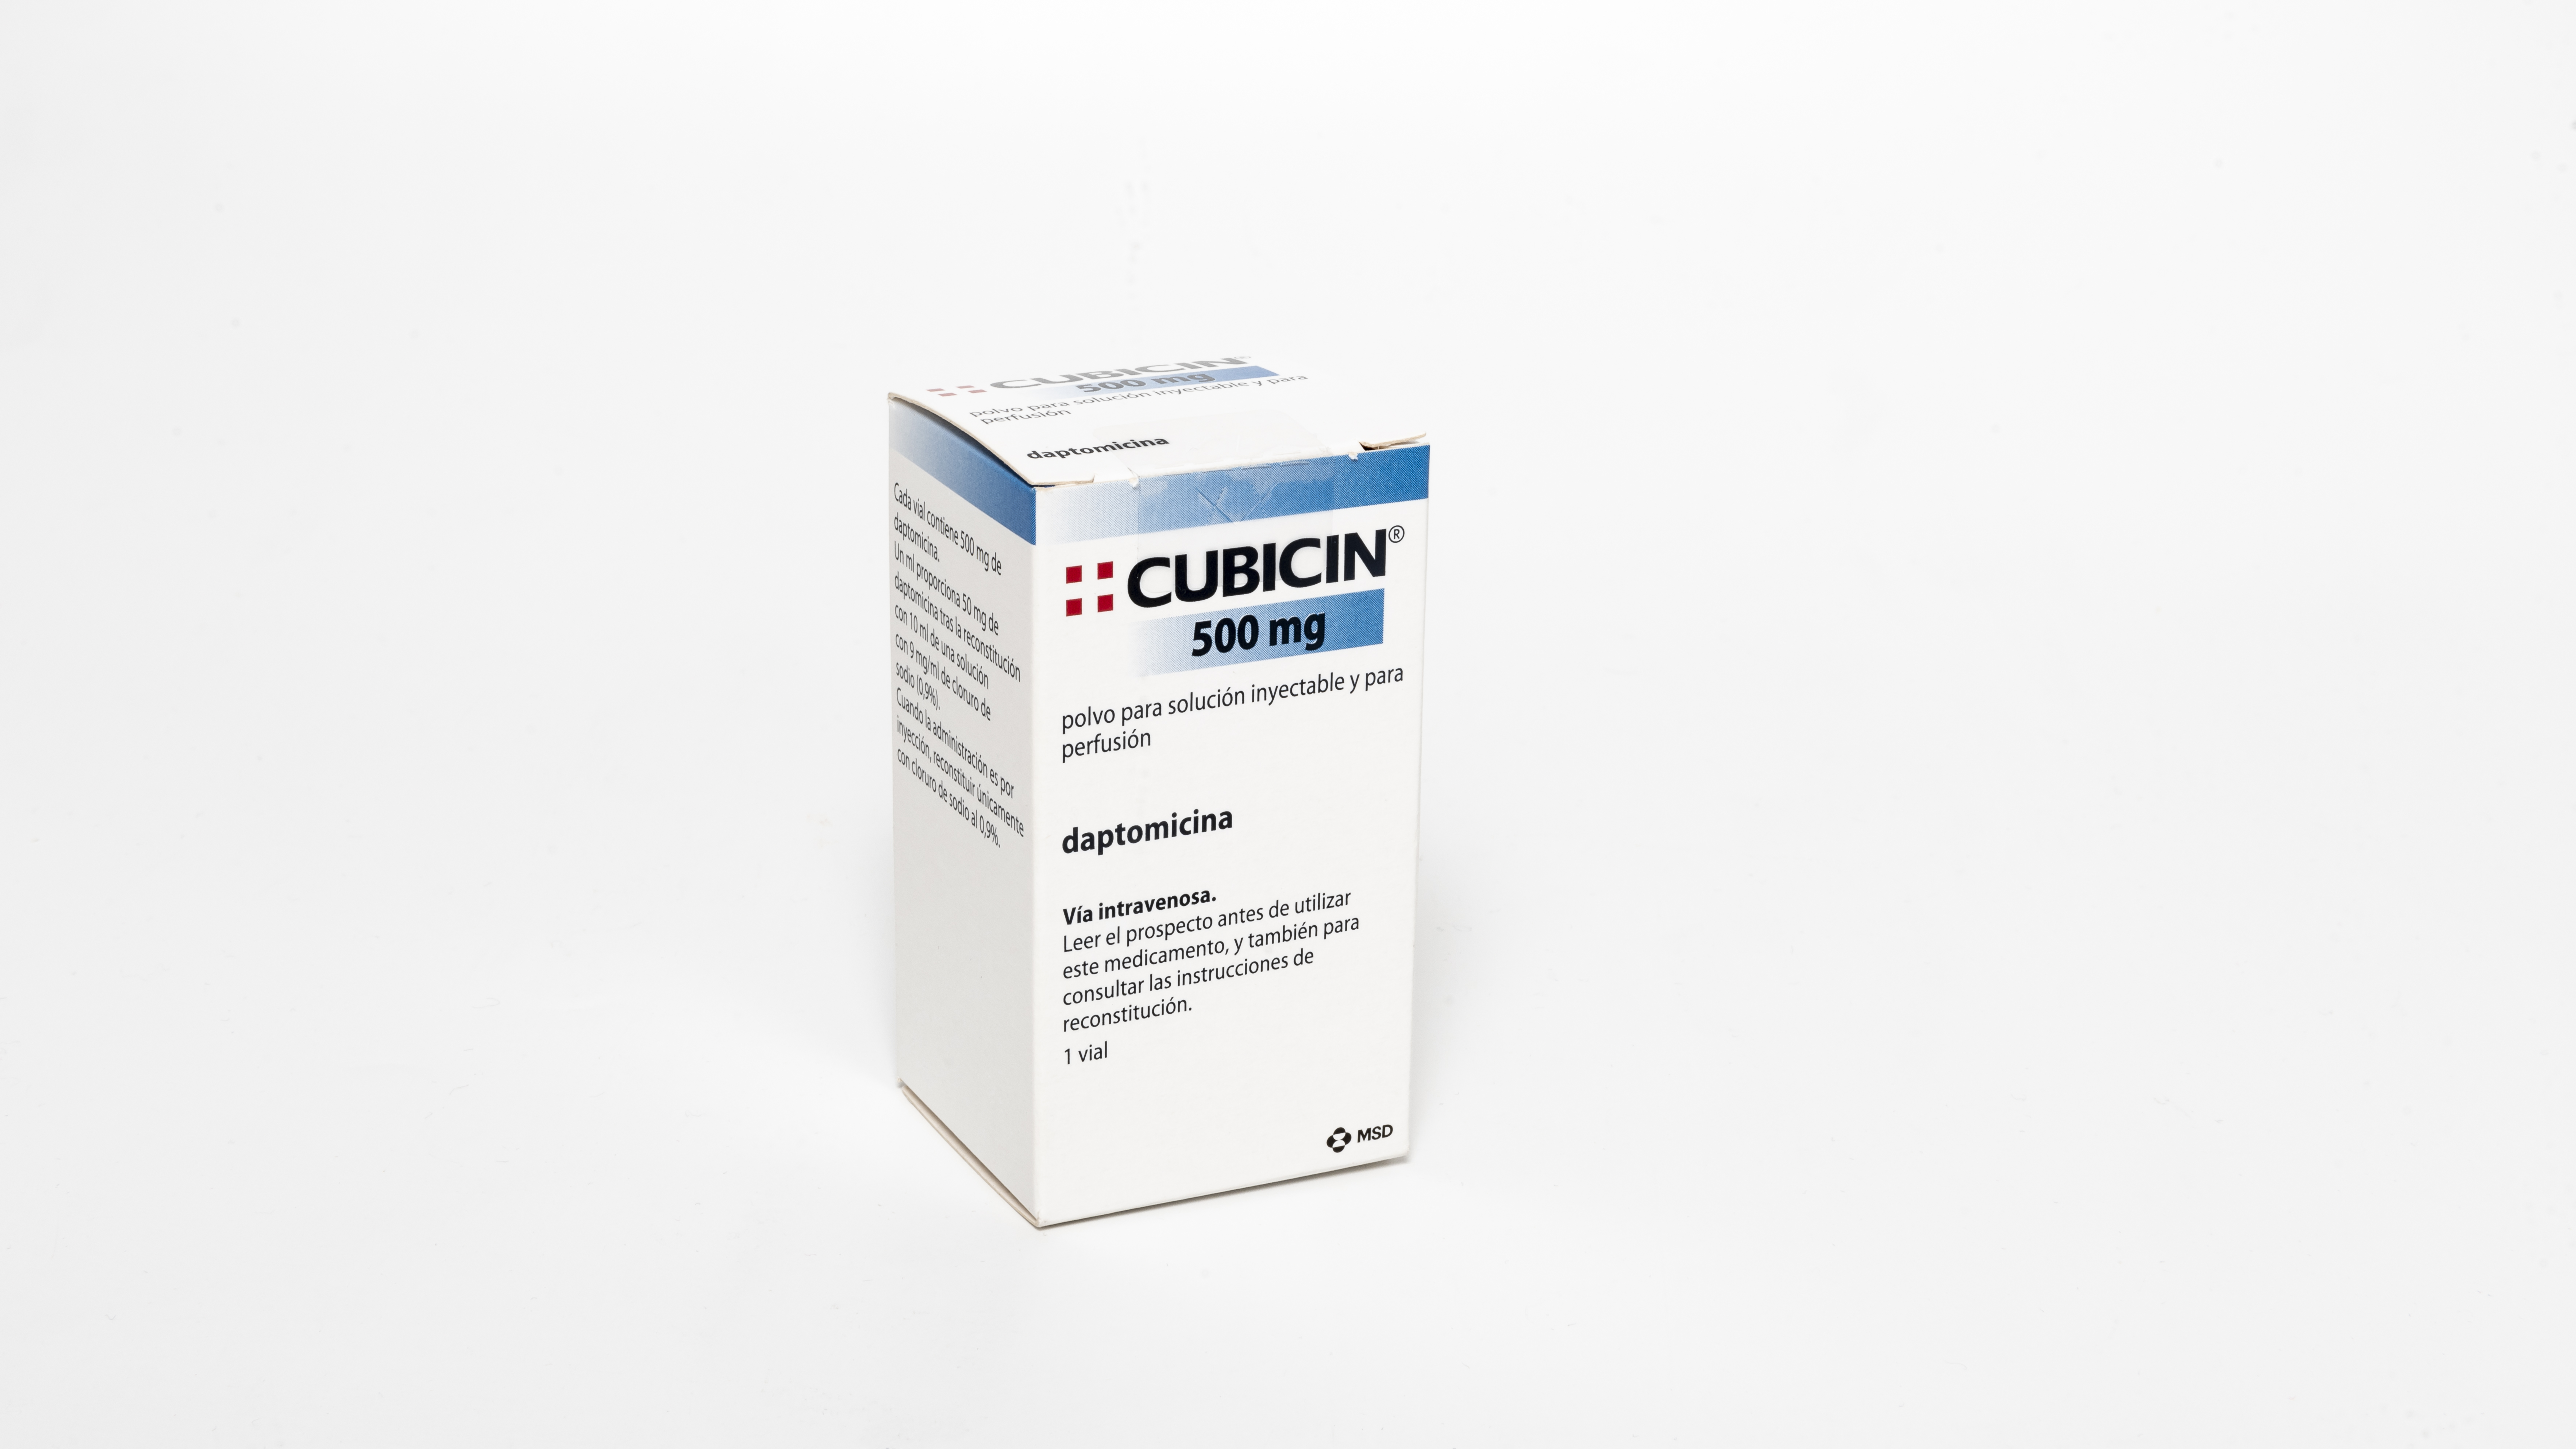 CUBICIN 500 mg 1 VIAL POLVO PARA SOLUCION INYECTABLE Y PARA PERFUSION